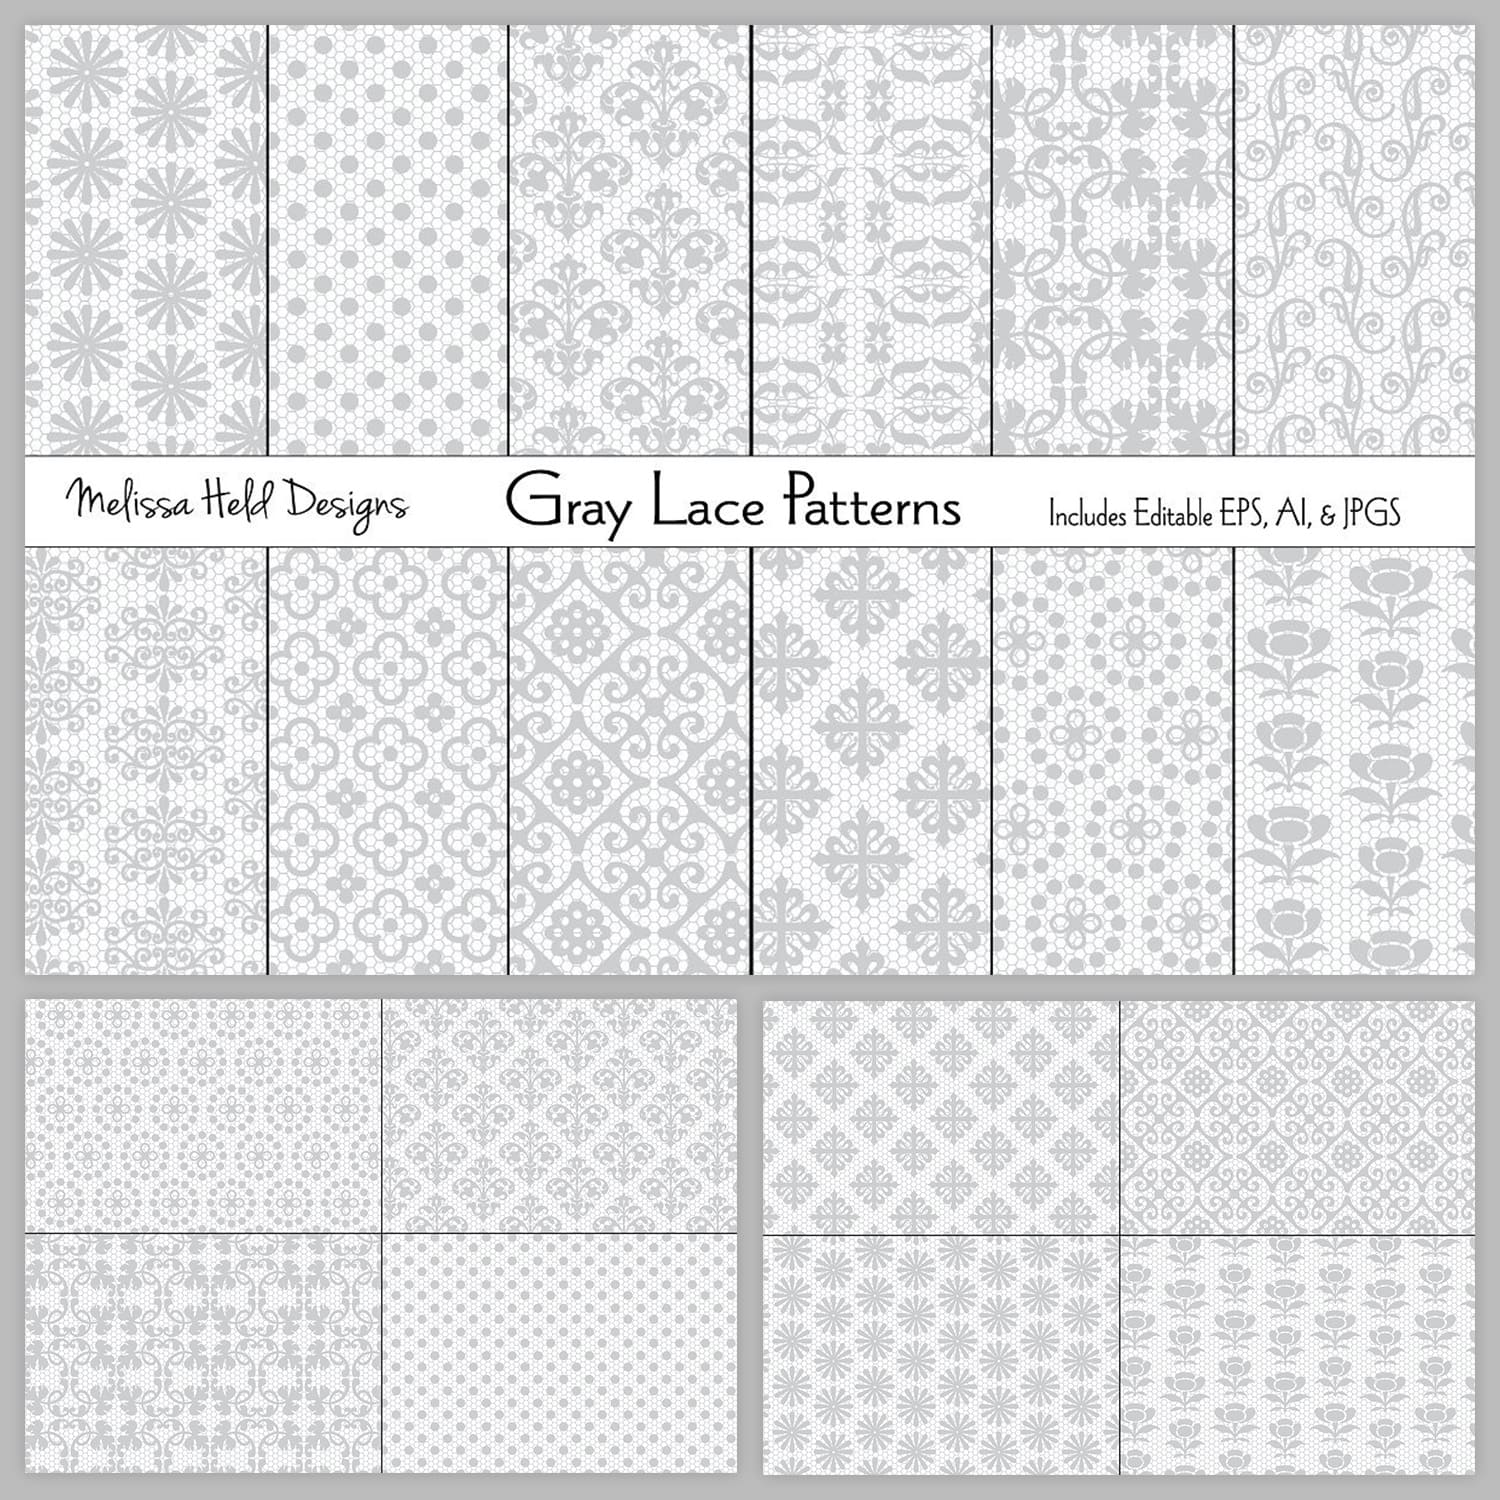 Gray Lace Patterns.